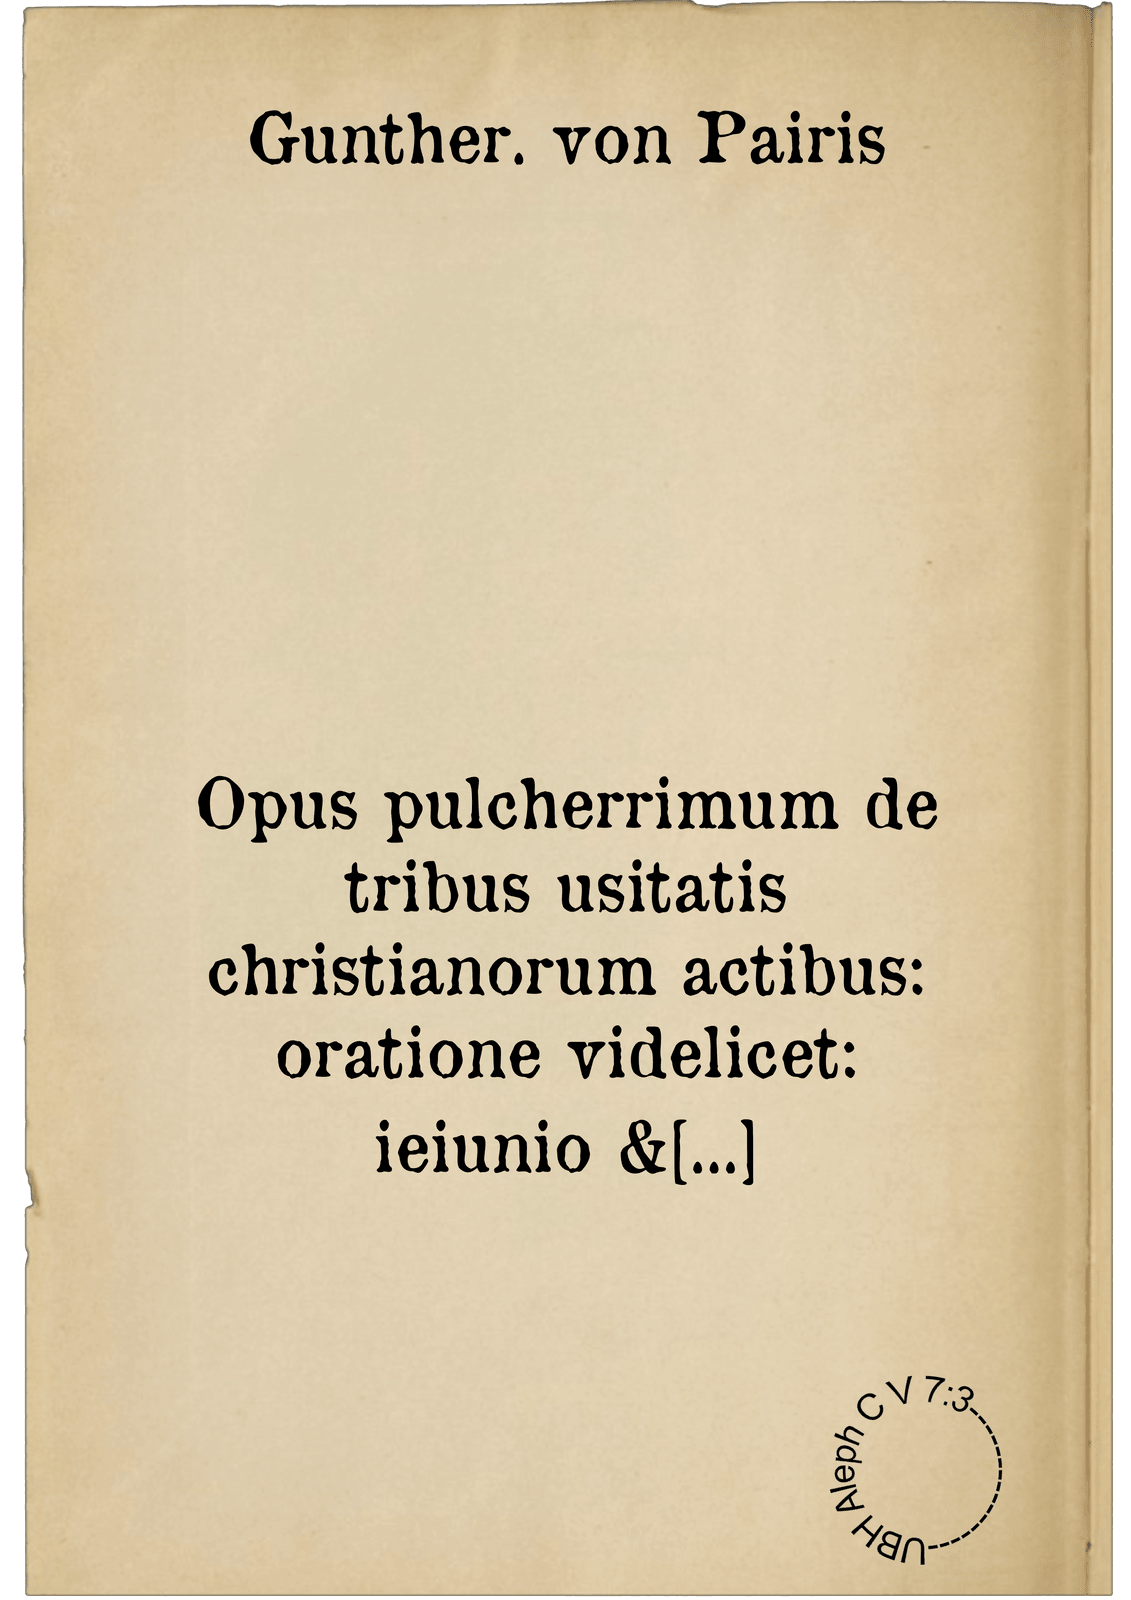 Opus pulcherrimum de tribus usitatis christianorum actibus: oratione videlicet: ieiunio & elemosyna. continens libros tredecim